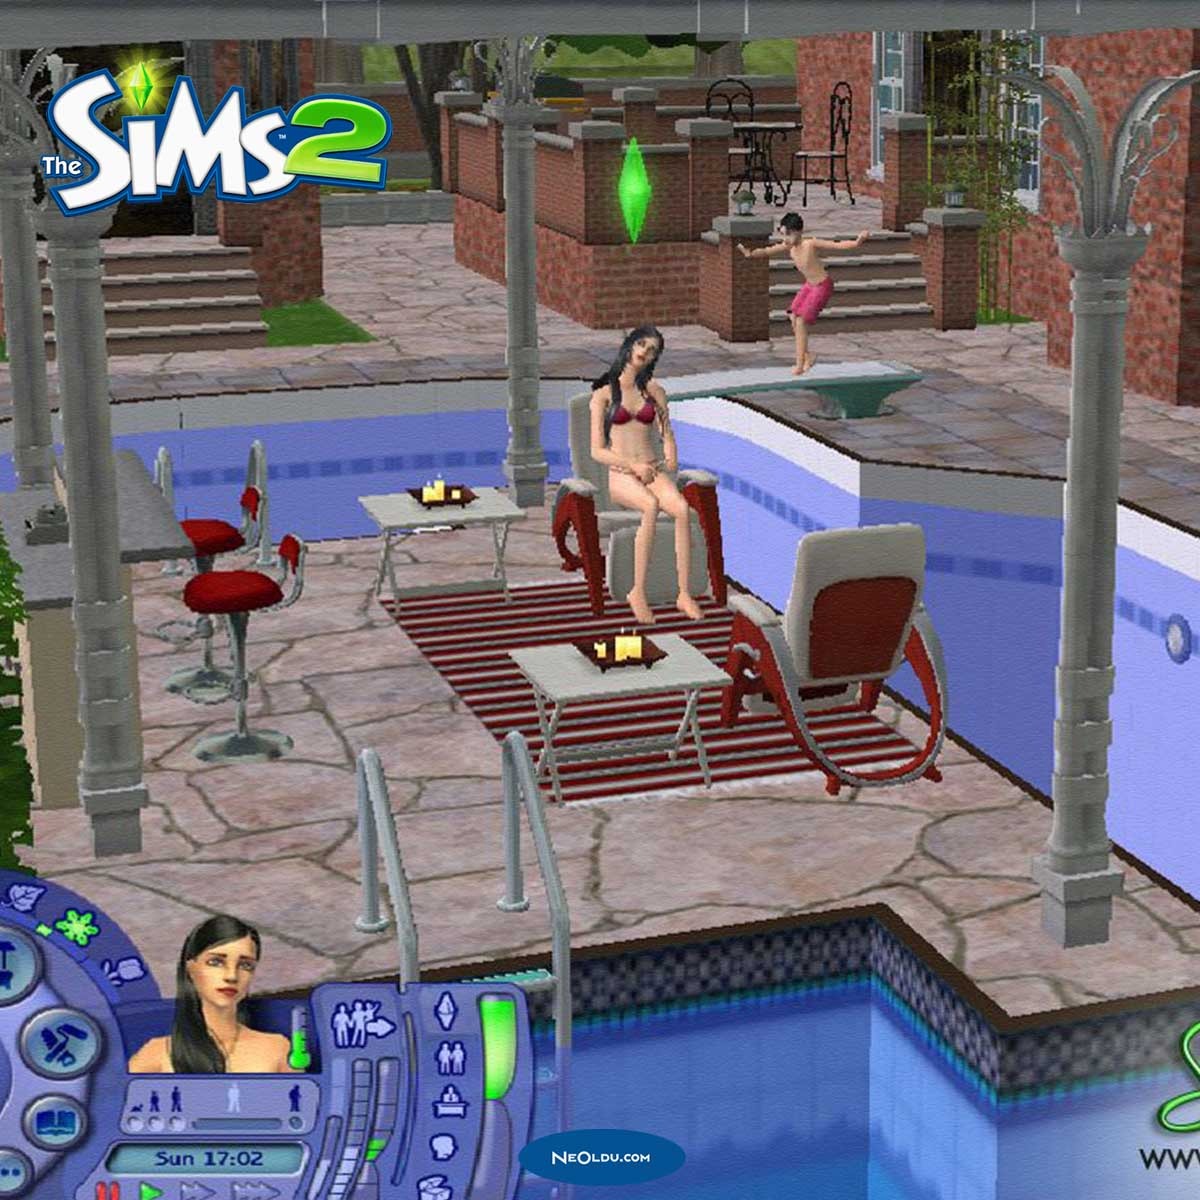 Sims 2 Hileleri